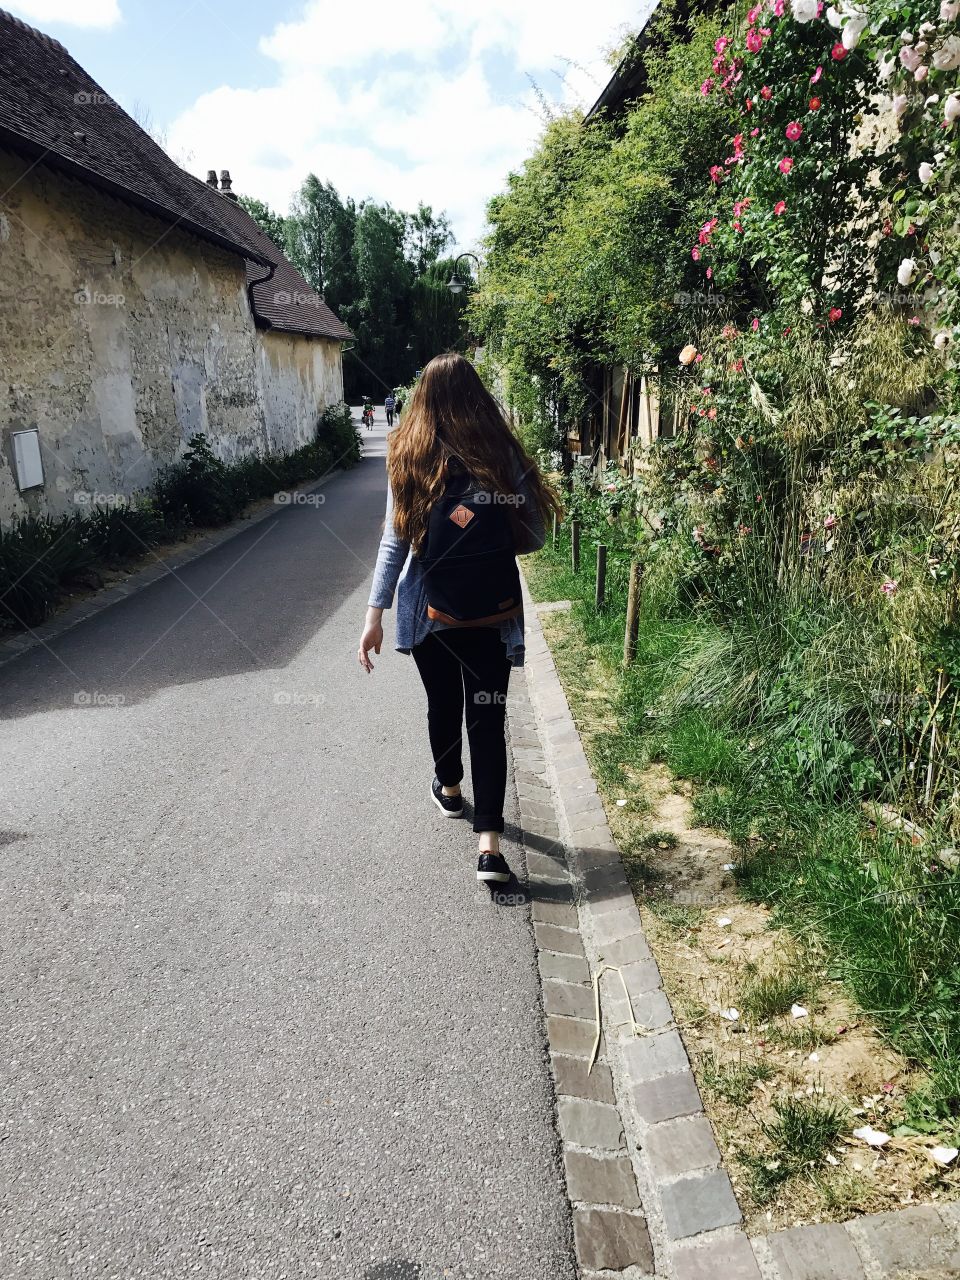 Walking through France